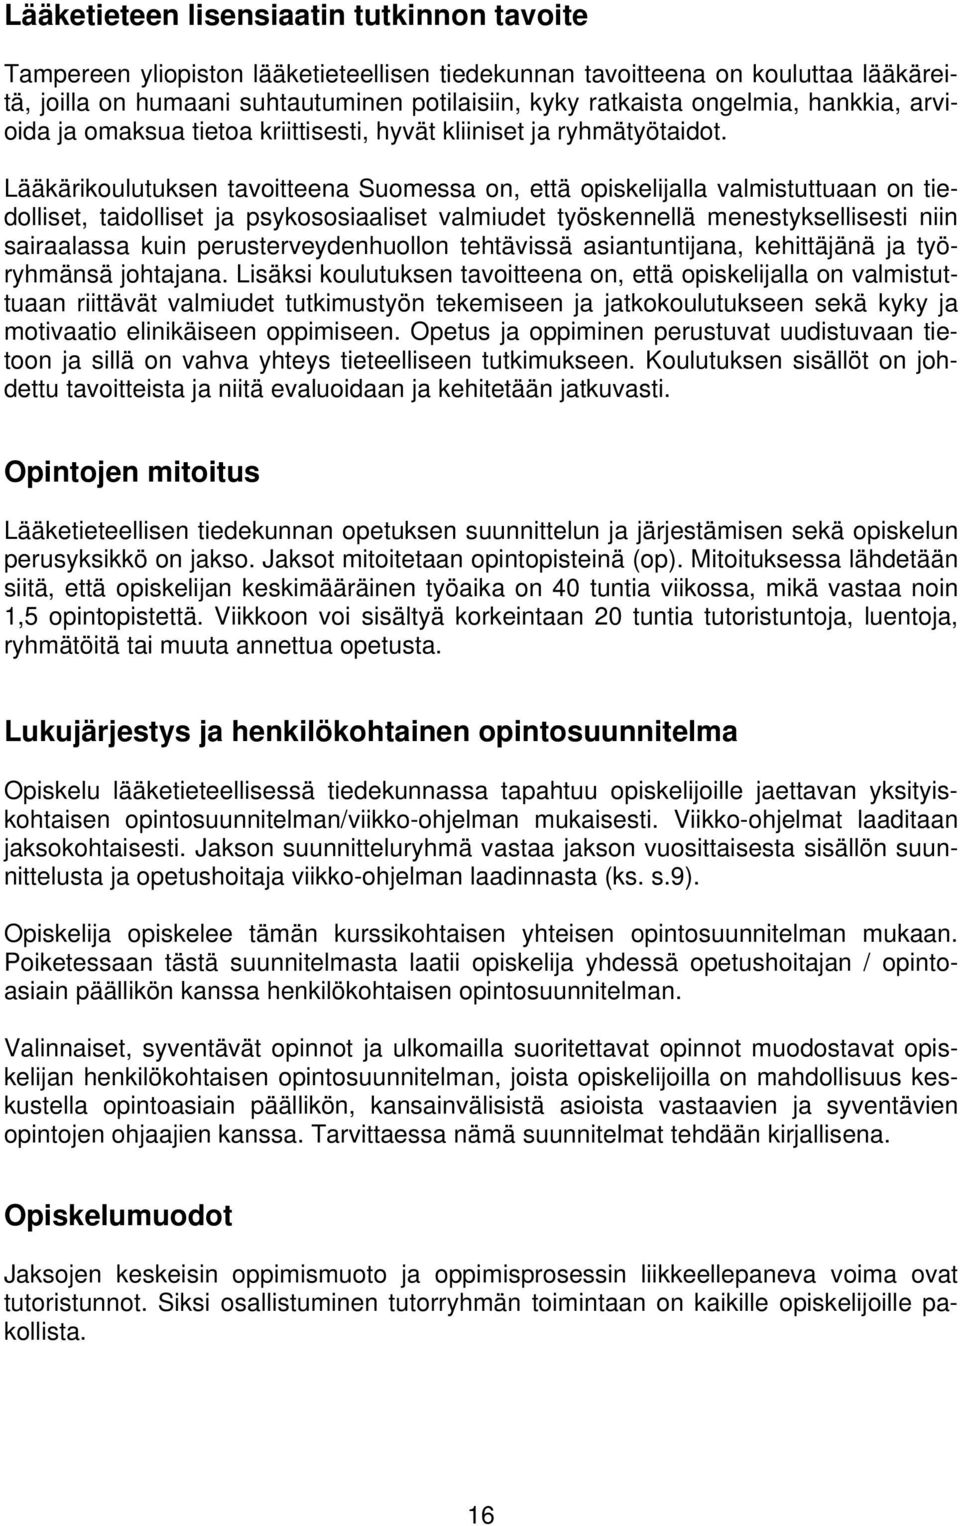 Lääkärikoulutuksen tavoitteena Suomessa on, että opiskelijalla valmistuttuaan on tiedolliset, taidolliset ja psykososiaaliset valmiudet työskennellä menestyksellisesti niin sairaalassa kuin